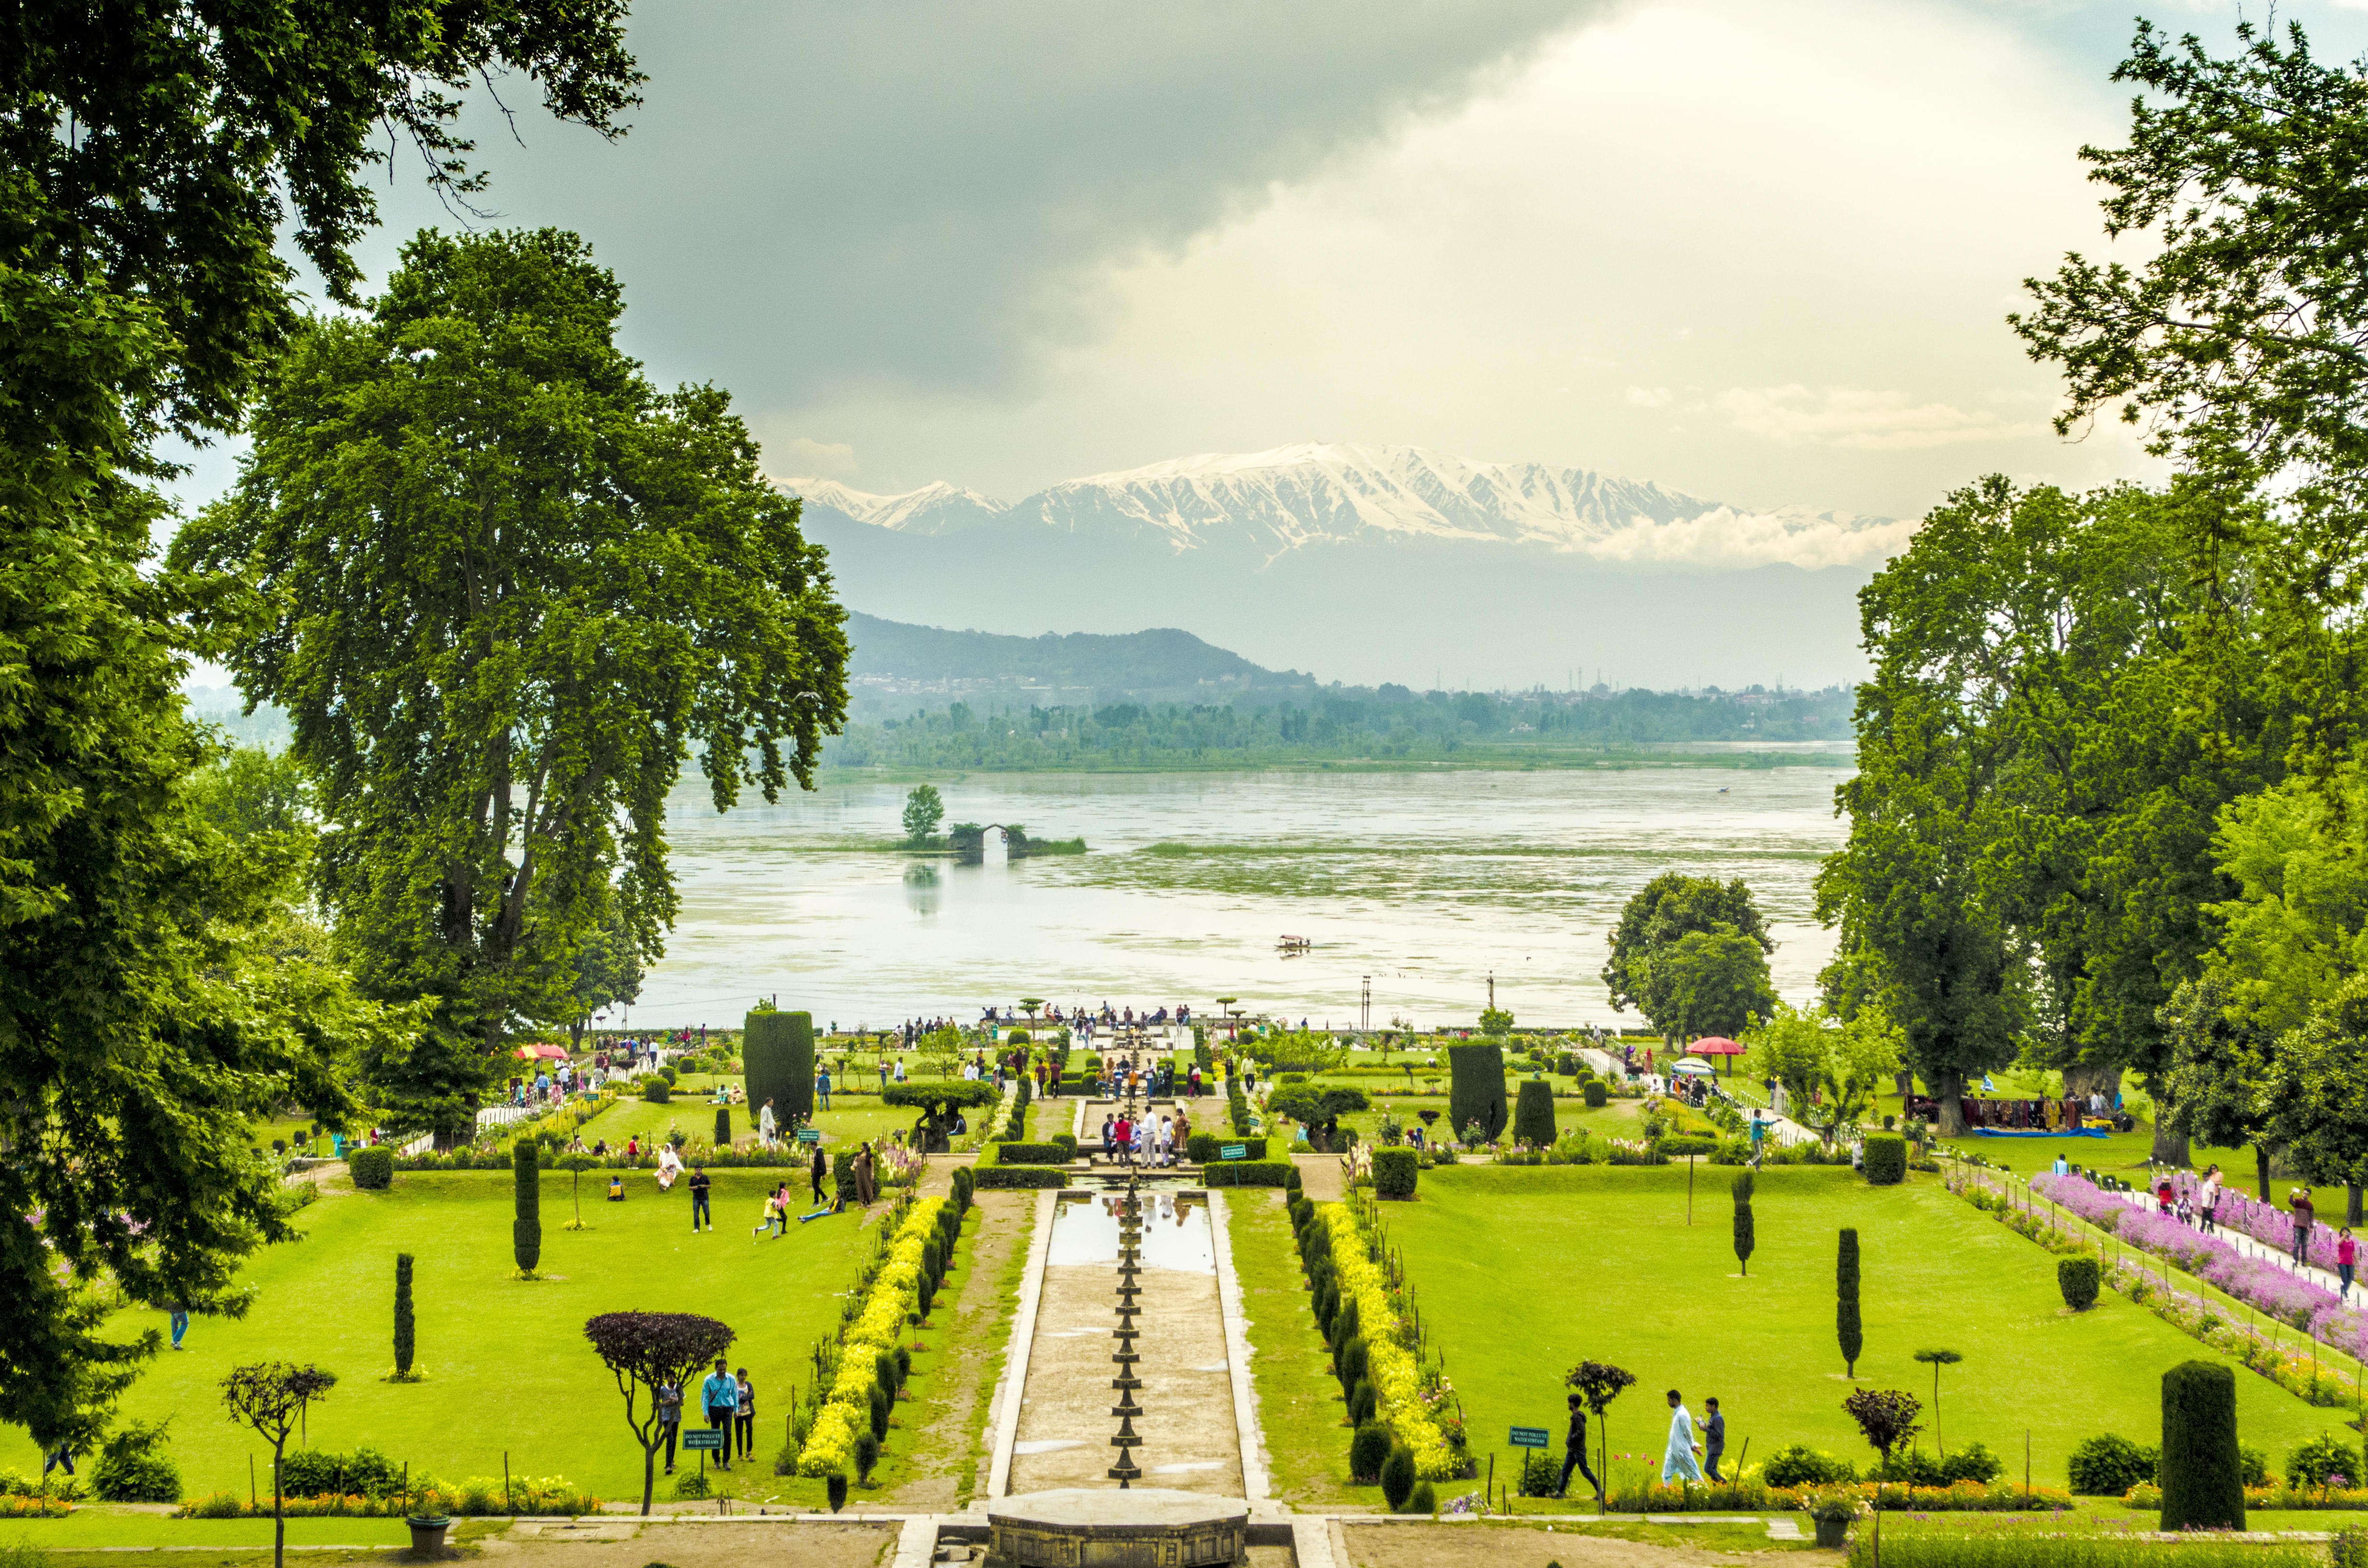 View of Nishat Bagh overlooking Dal Lake, Srinagar